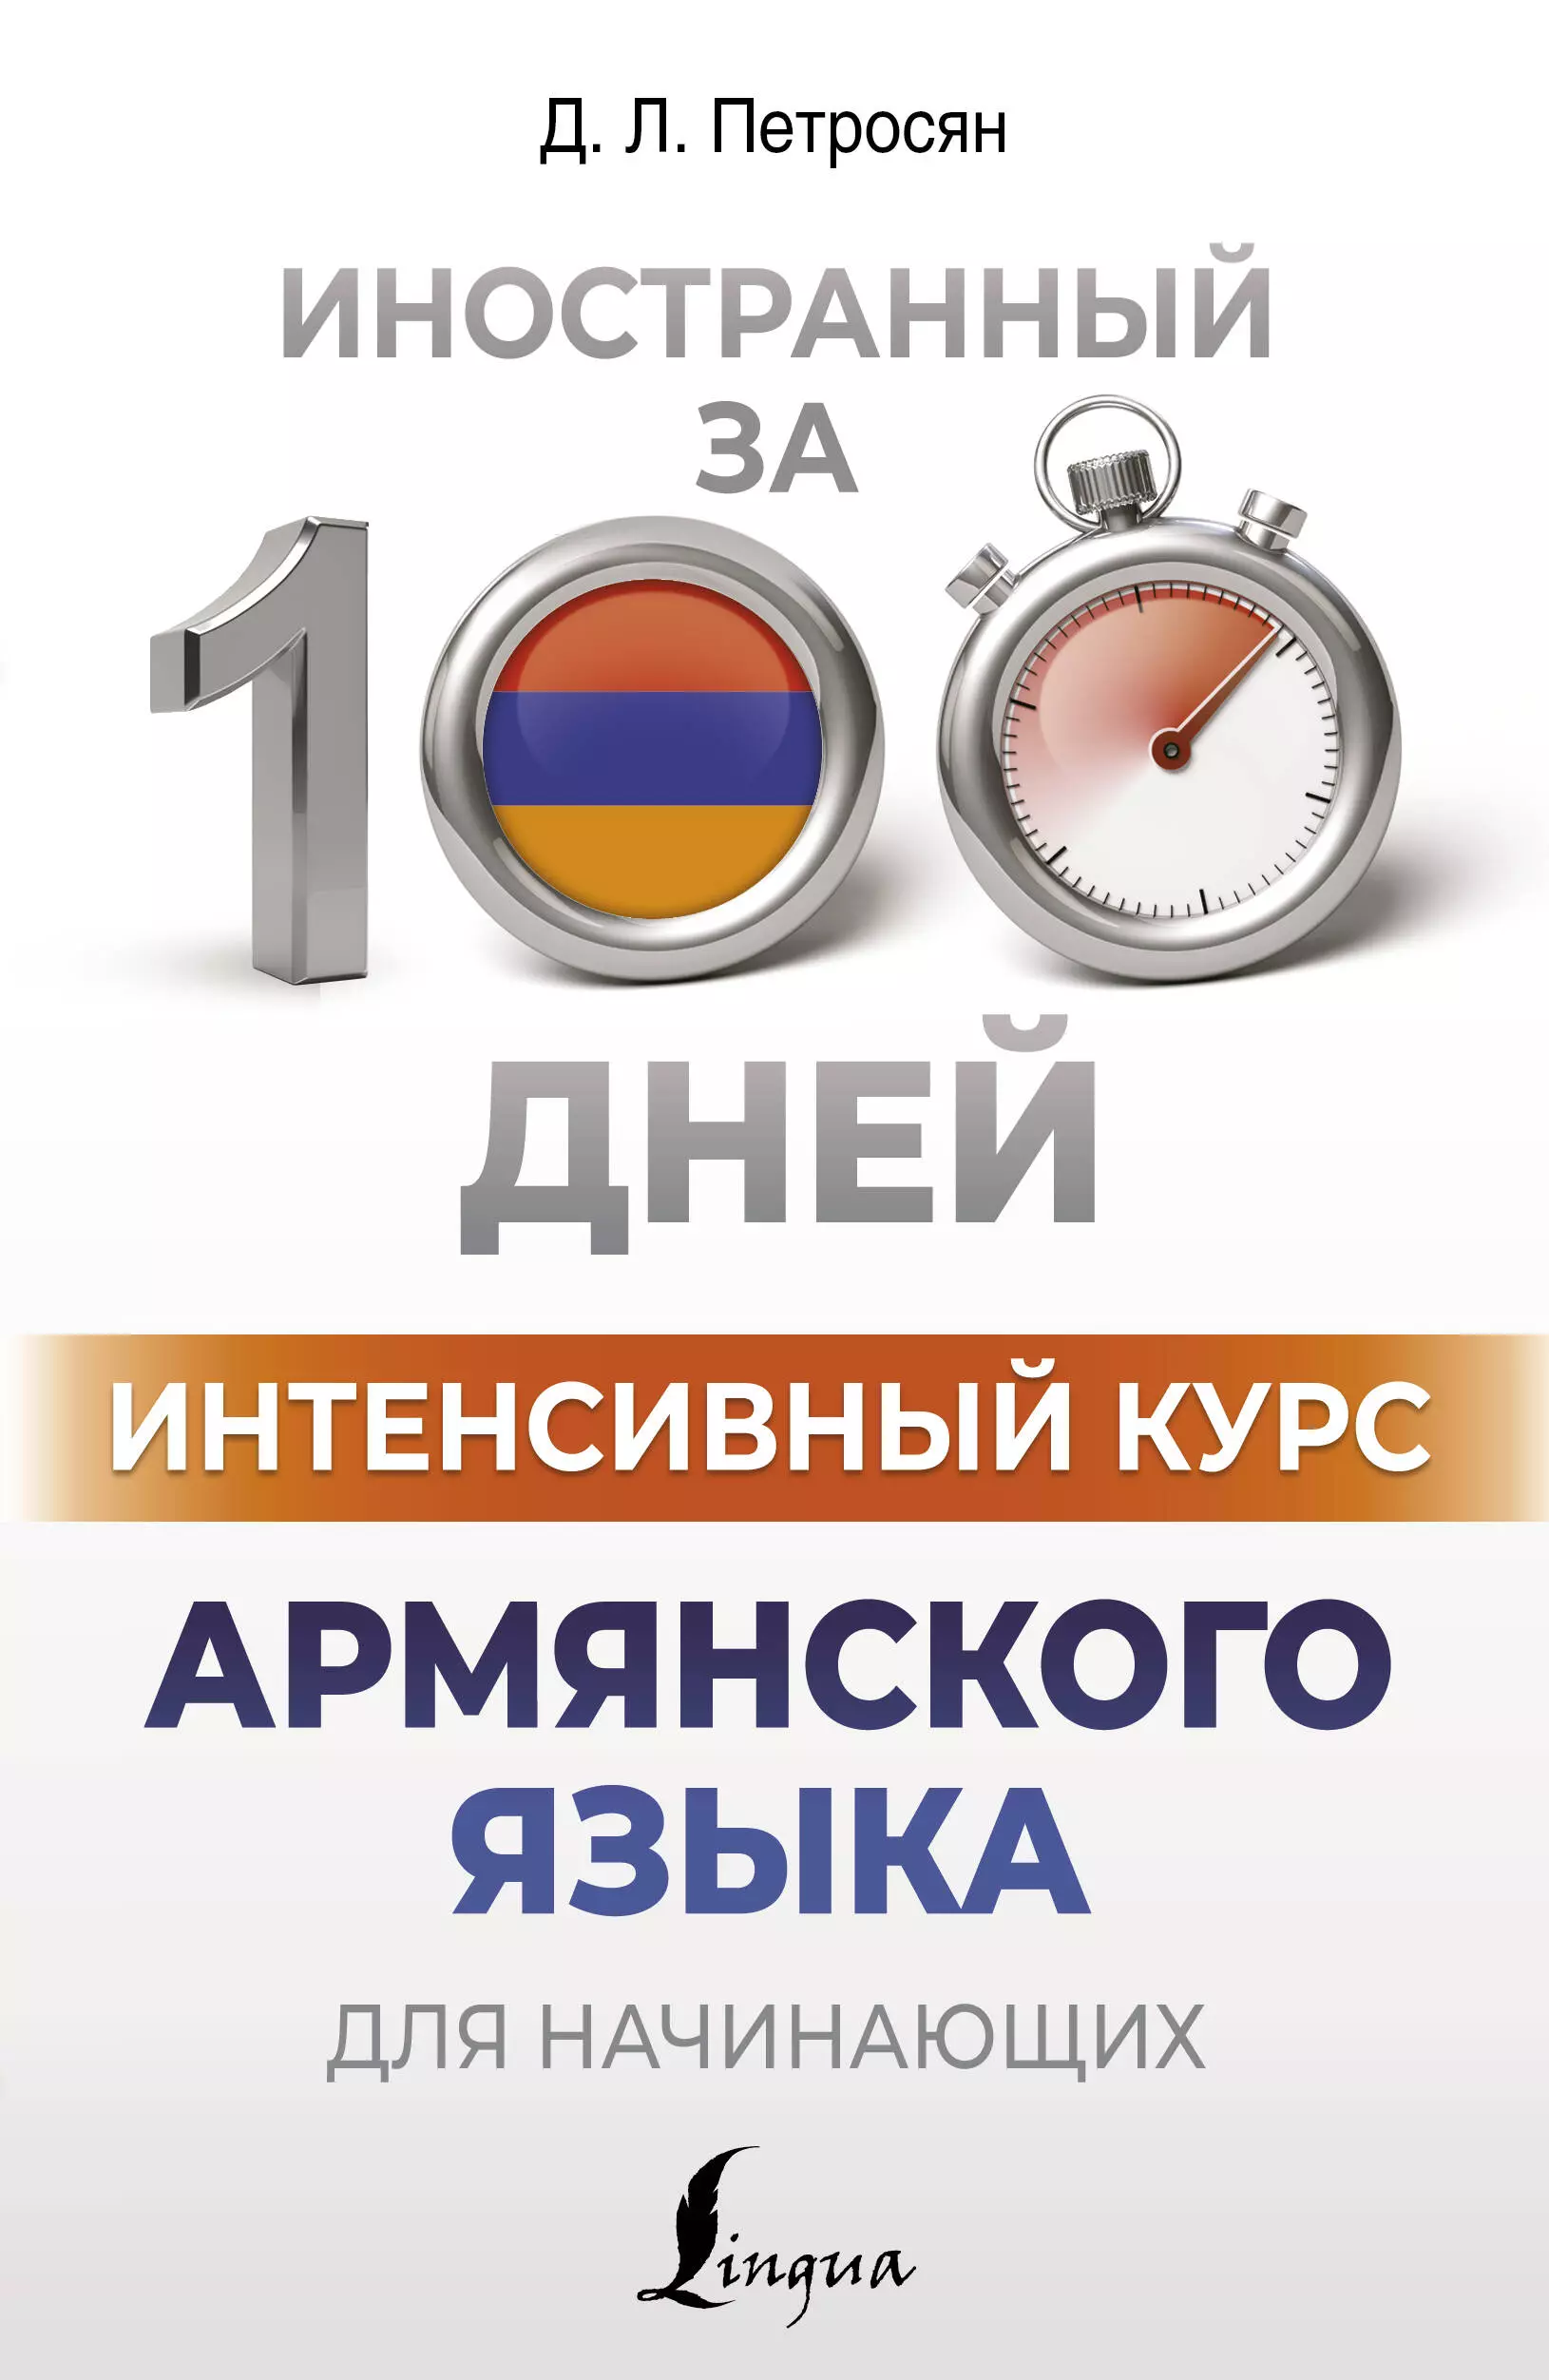 Интенсивный курс армянского языка для начинающих петросян джейни левоновна армянский за 3 месяца интенсивный курс